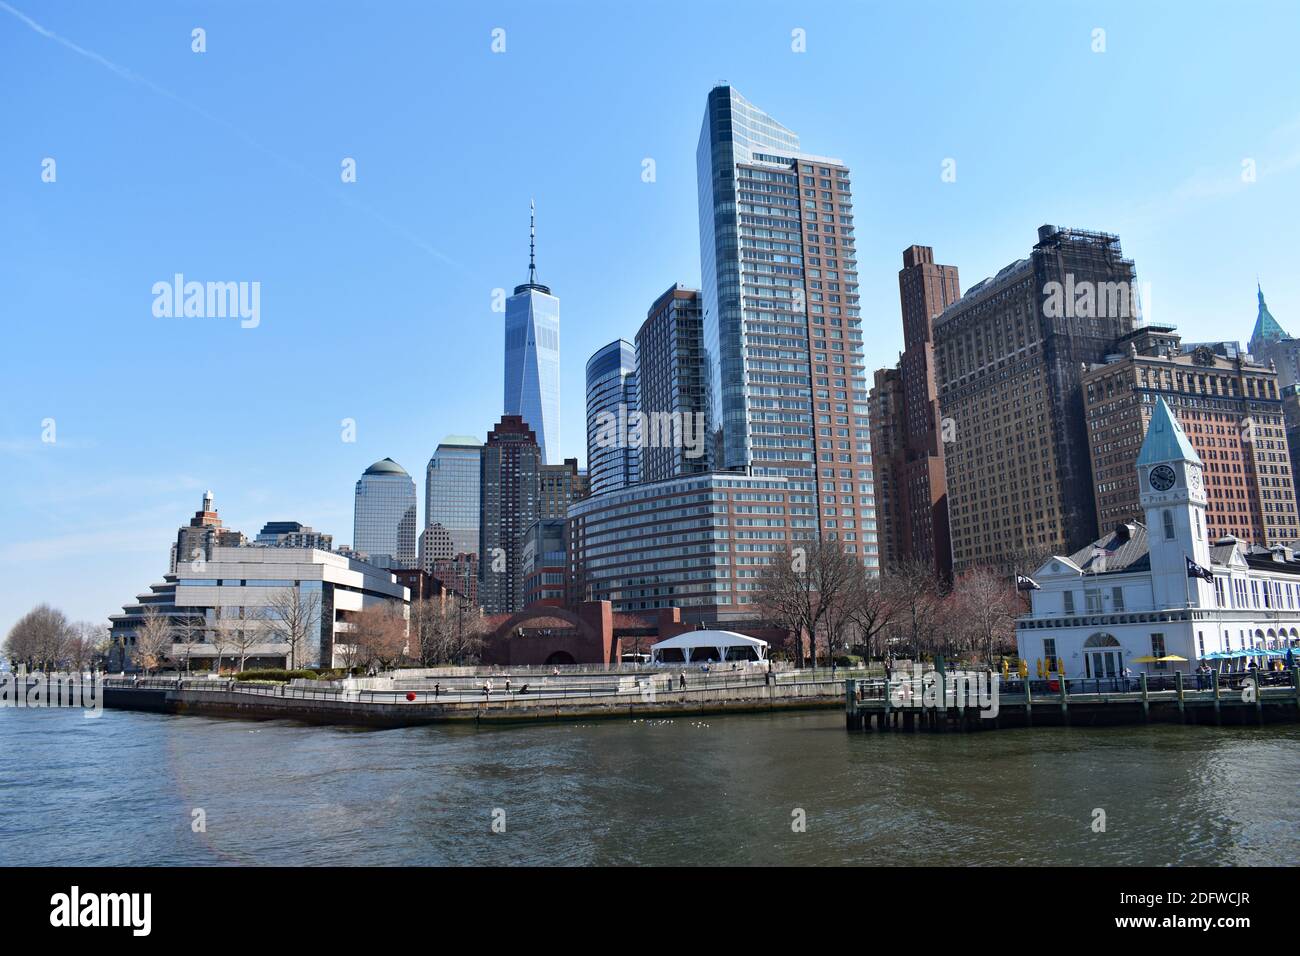 Lo skyline di Lower Manhattan visto dal fiume Hudson in un giorno con cielo blu chiaro. One World Trade Center e Battery Park sono in vista. Foto Stock